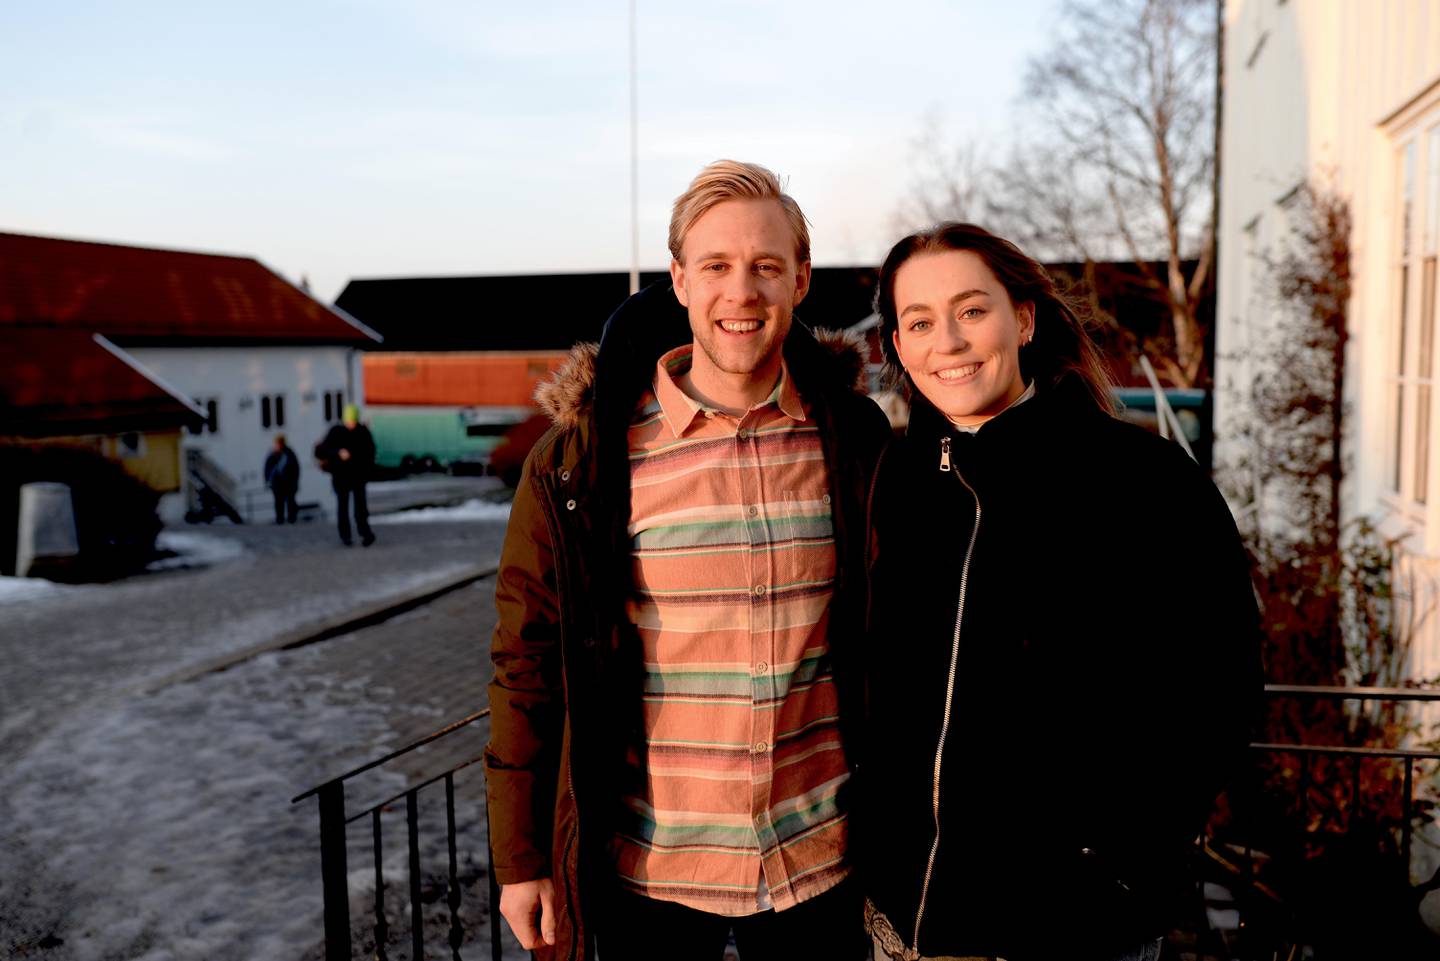 – Der Gud kaller oss tror vi også Gud vil forsørge oss, sier Gøran Andersen, som arbeider som stab ved UIOs base i Kristiansand sammen med sin kone Laura.